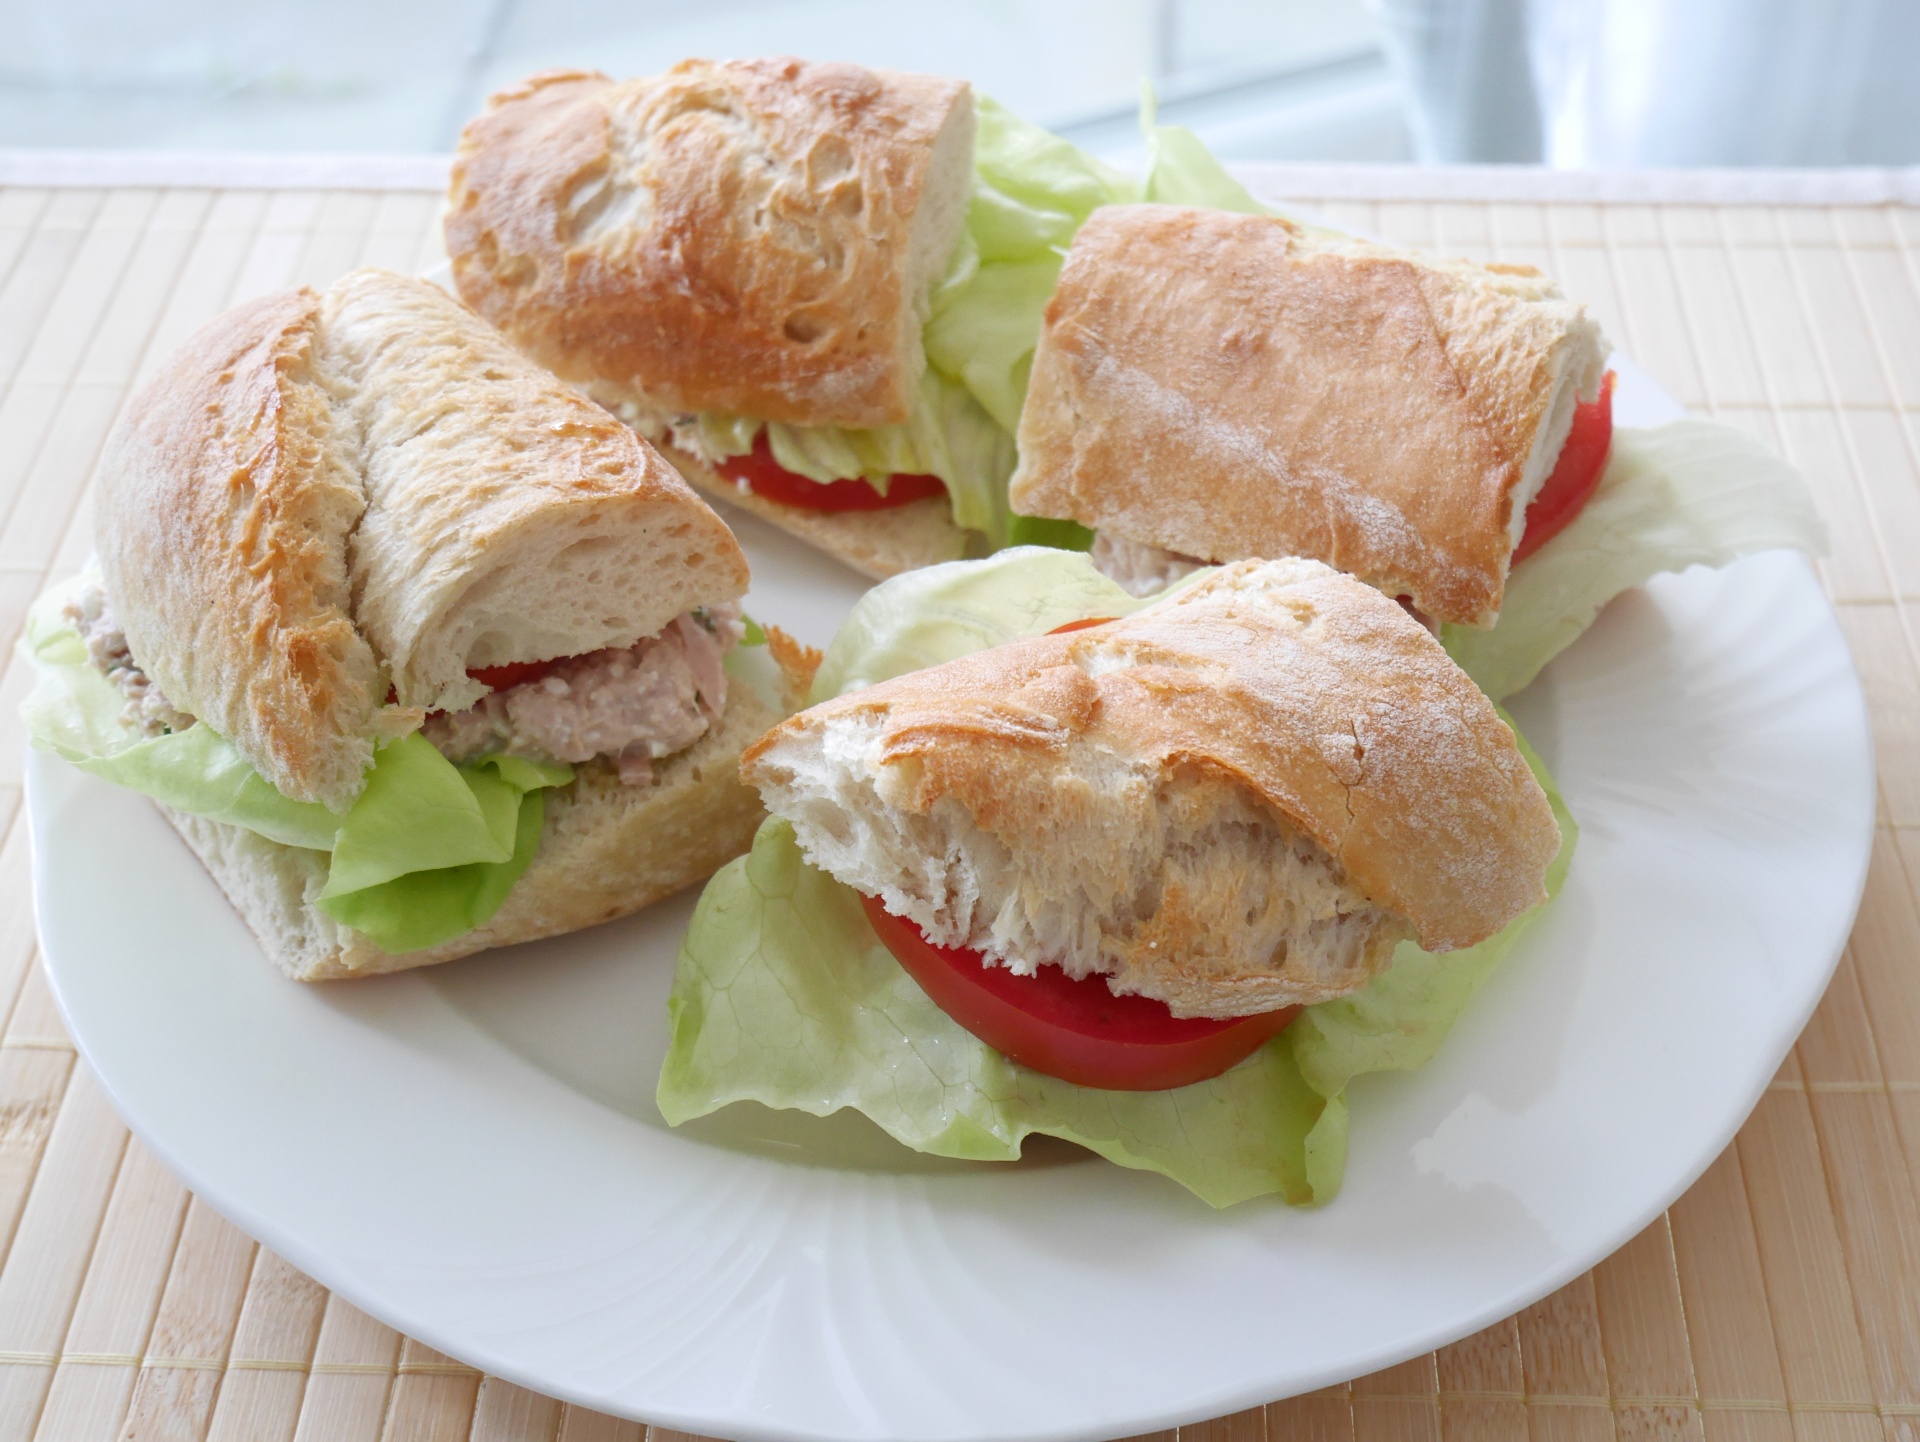 Sandwiches mit Thunfischcreme